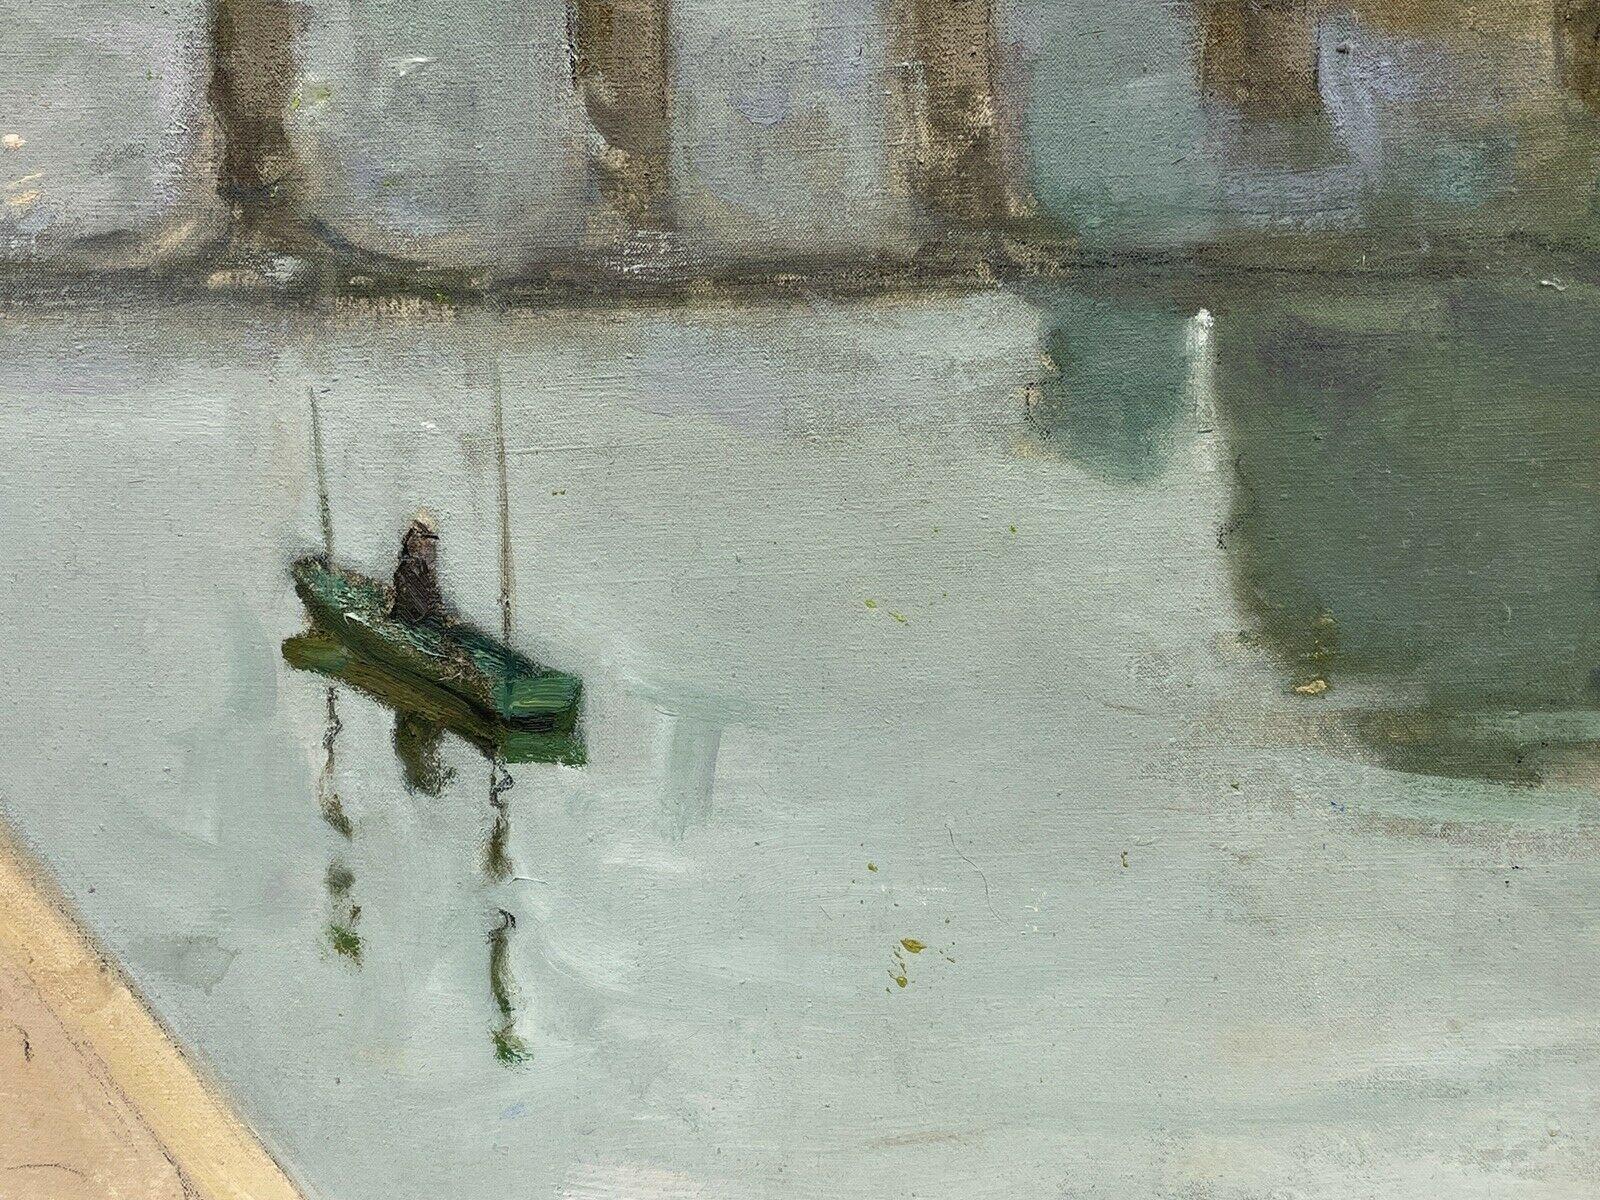 Artiste/École :
Constant Dore (français 1883-1963)

Titre :
La Seine, Paris. Travail de belle qualité montrant l'influence de l'école de Pont-Aven, avec l'épais pinceau carré de couleur presque bloc et la palette de couleurs. L'artiste est